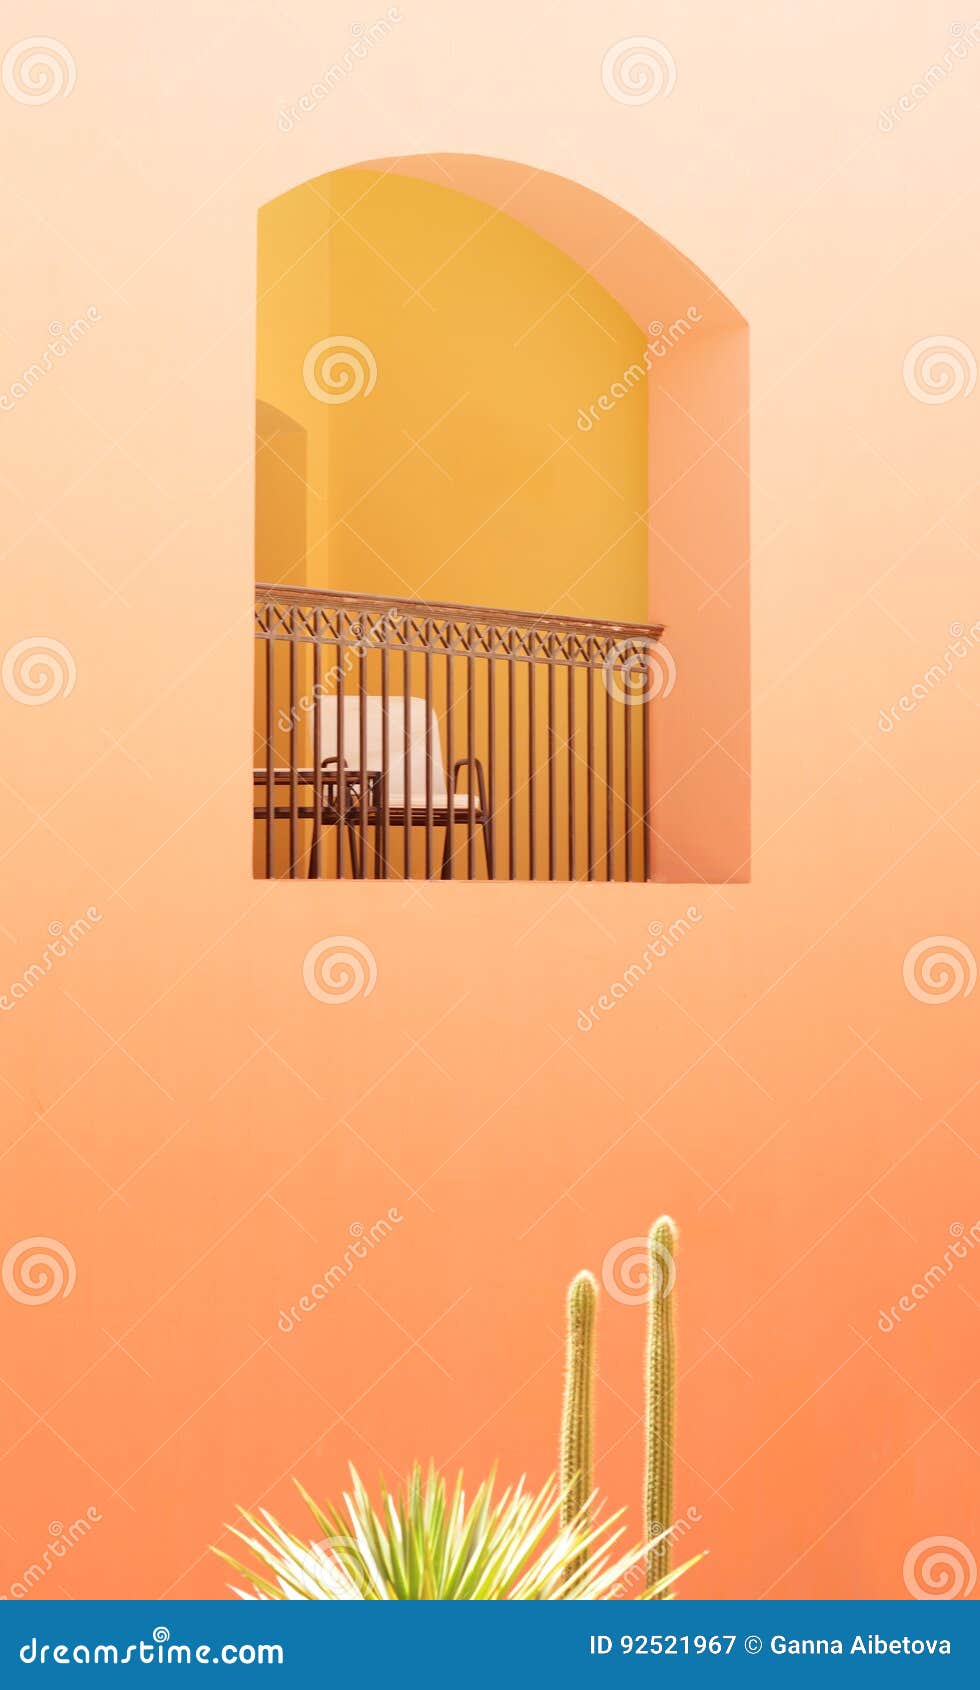 Imagen Minimalista De La Pared Amarilla Del Edificio Y De La